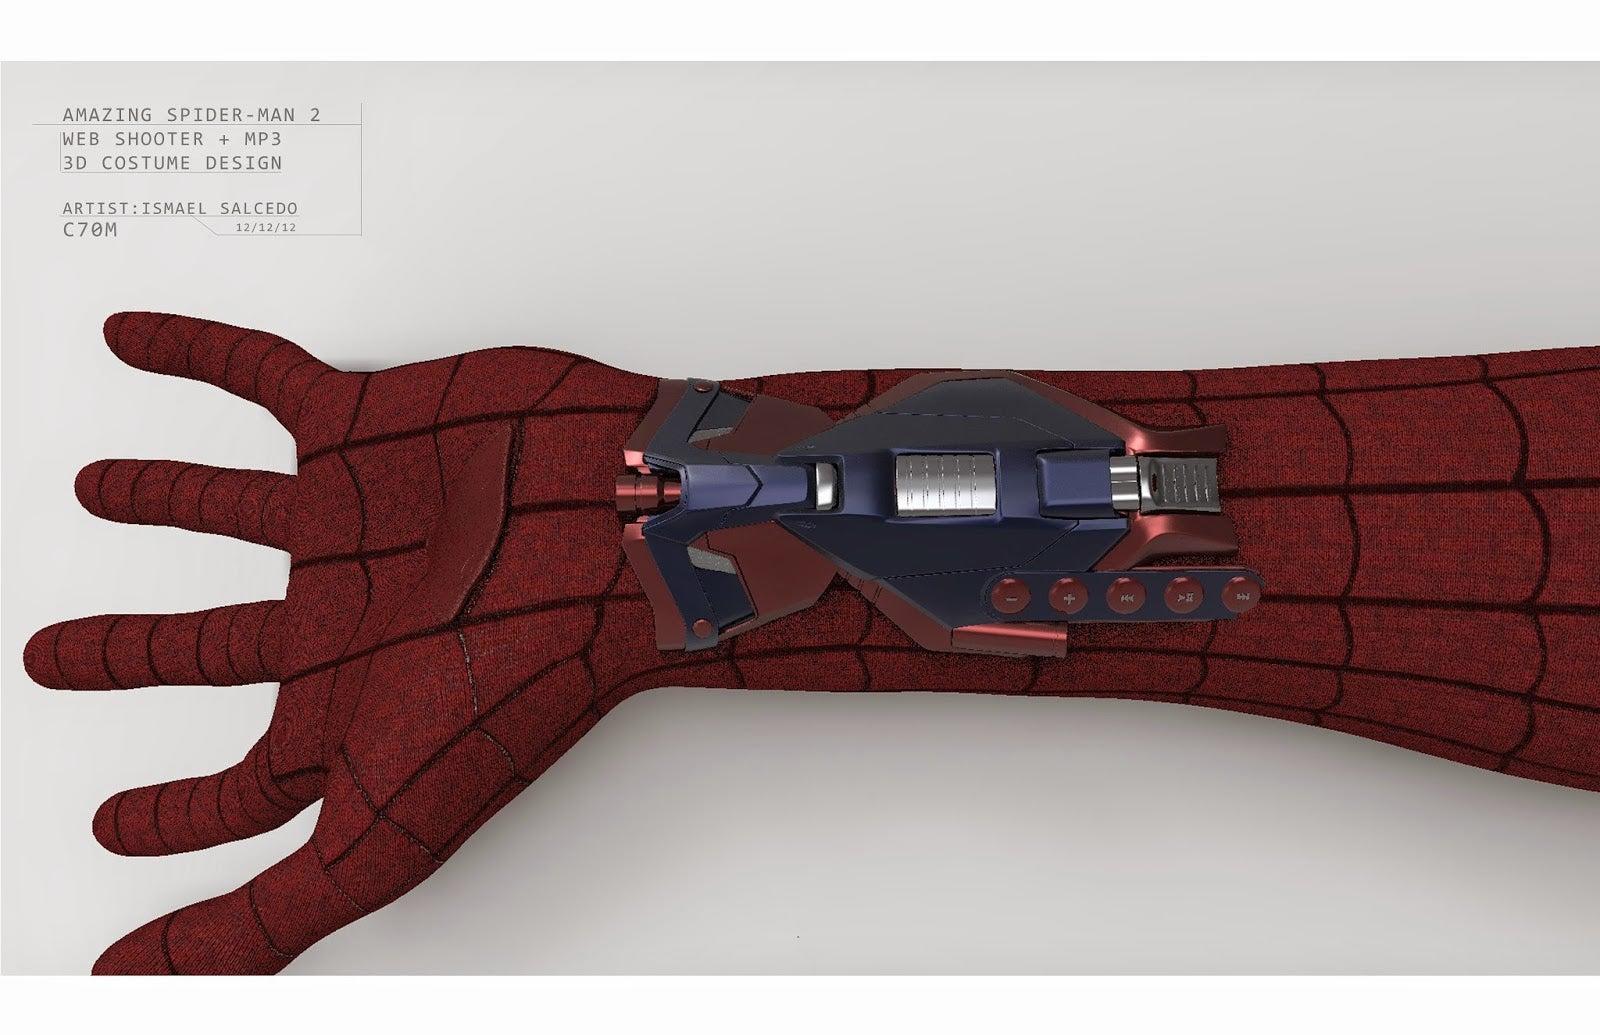 Amazing Spider-Man 2 Unused Web Shooters Revealed